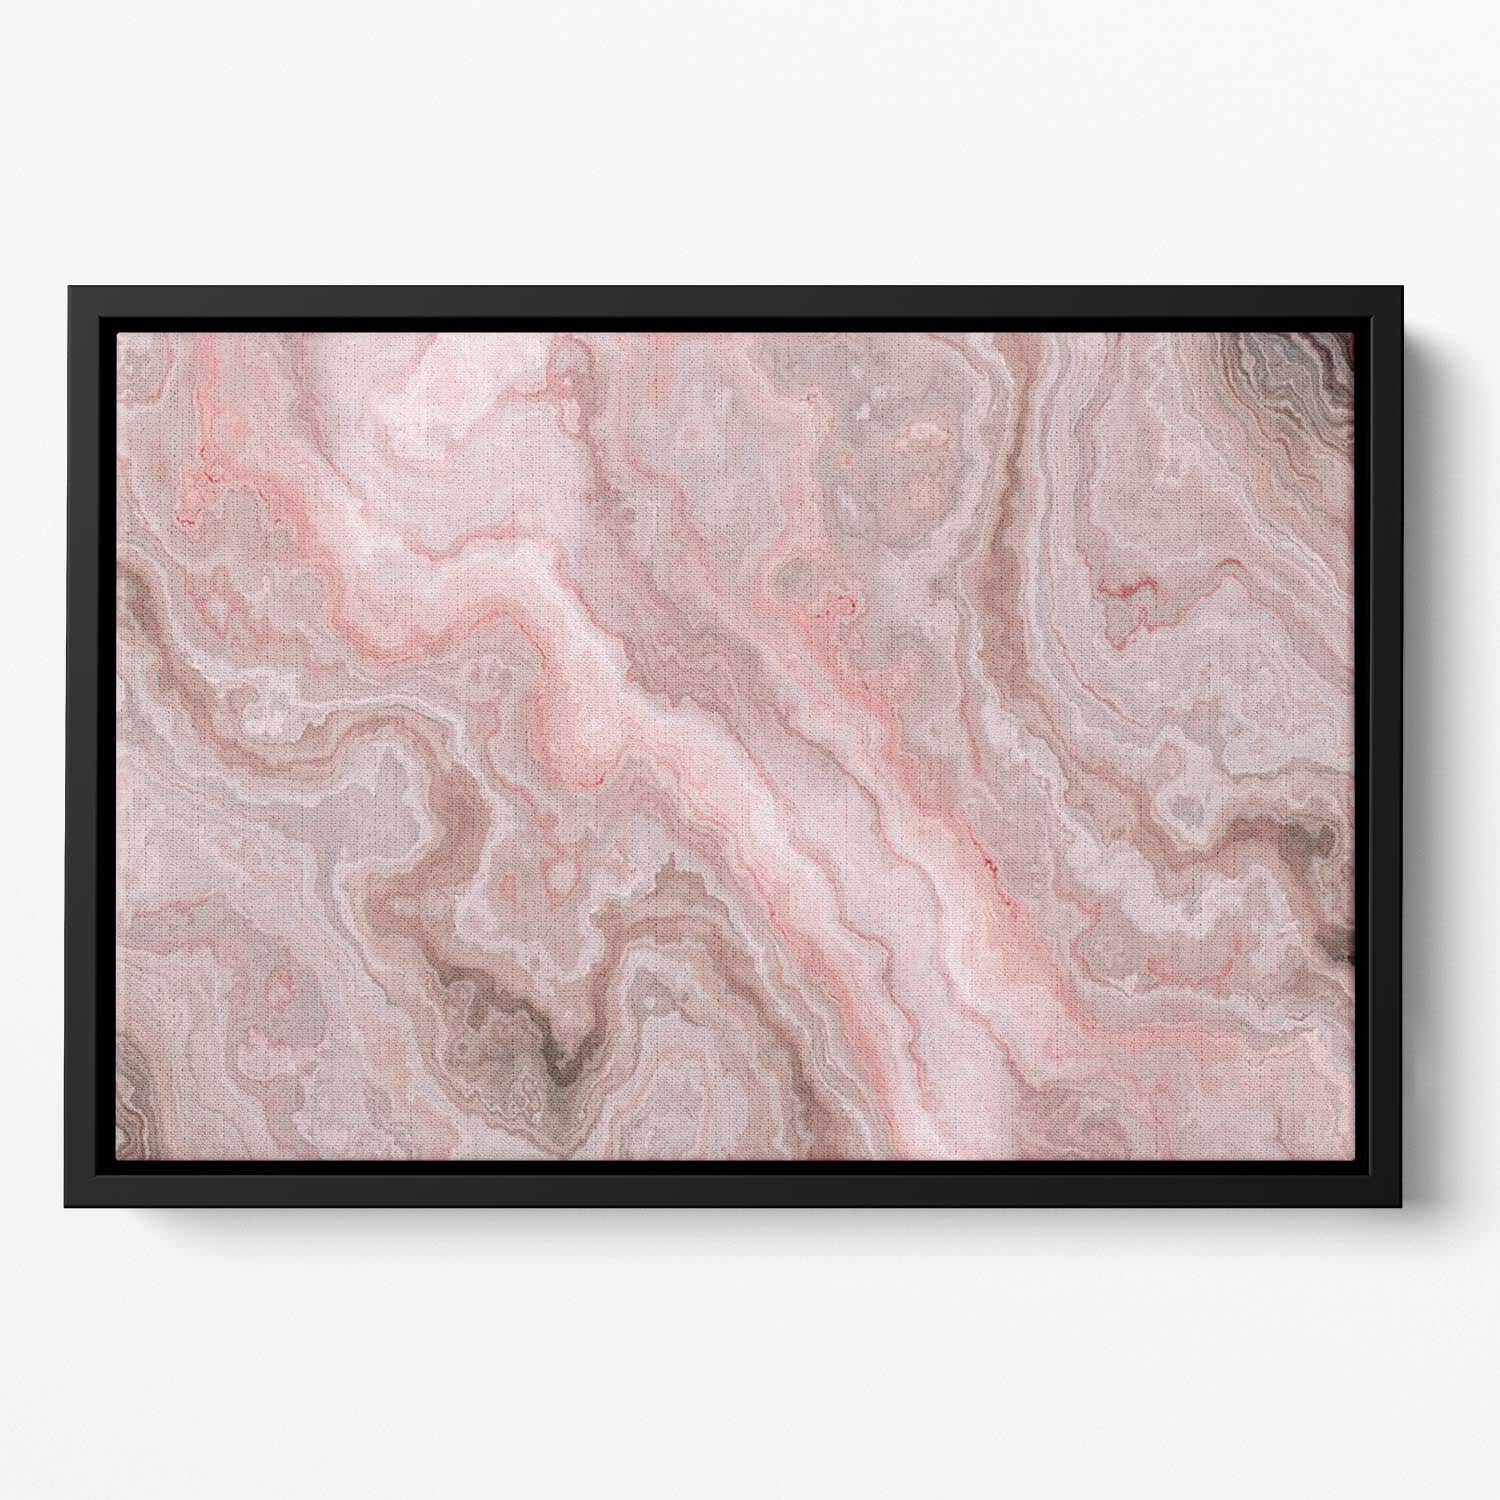 Rose Marble Floating Framed Canvas - Canvas Art Rocks - 2